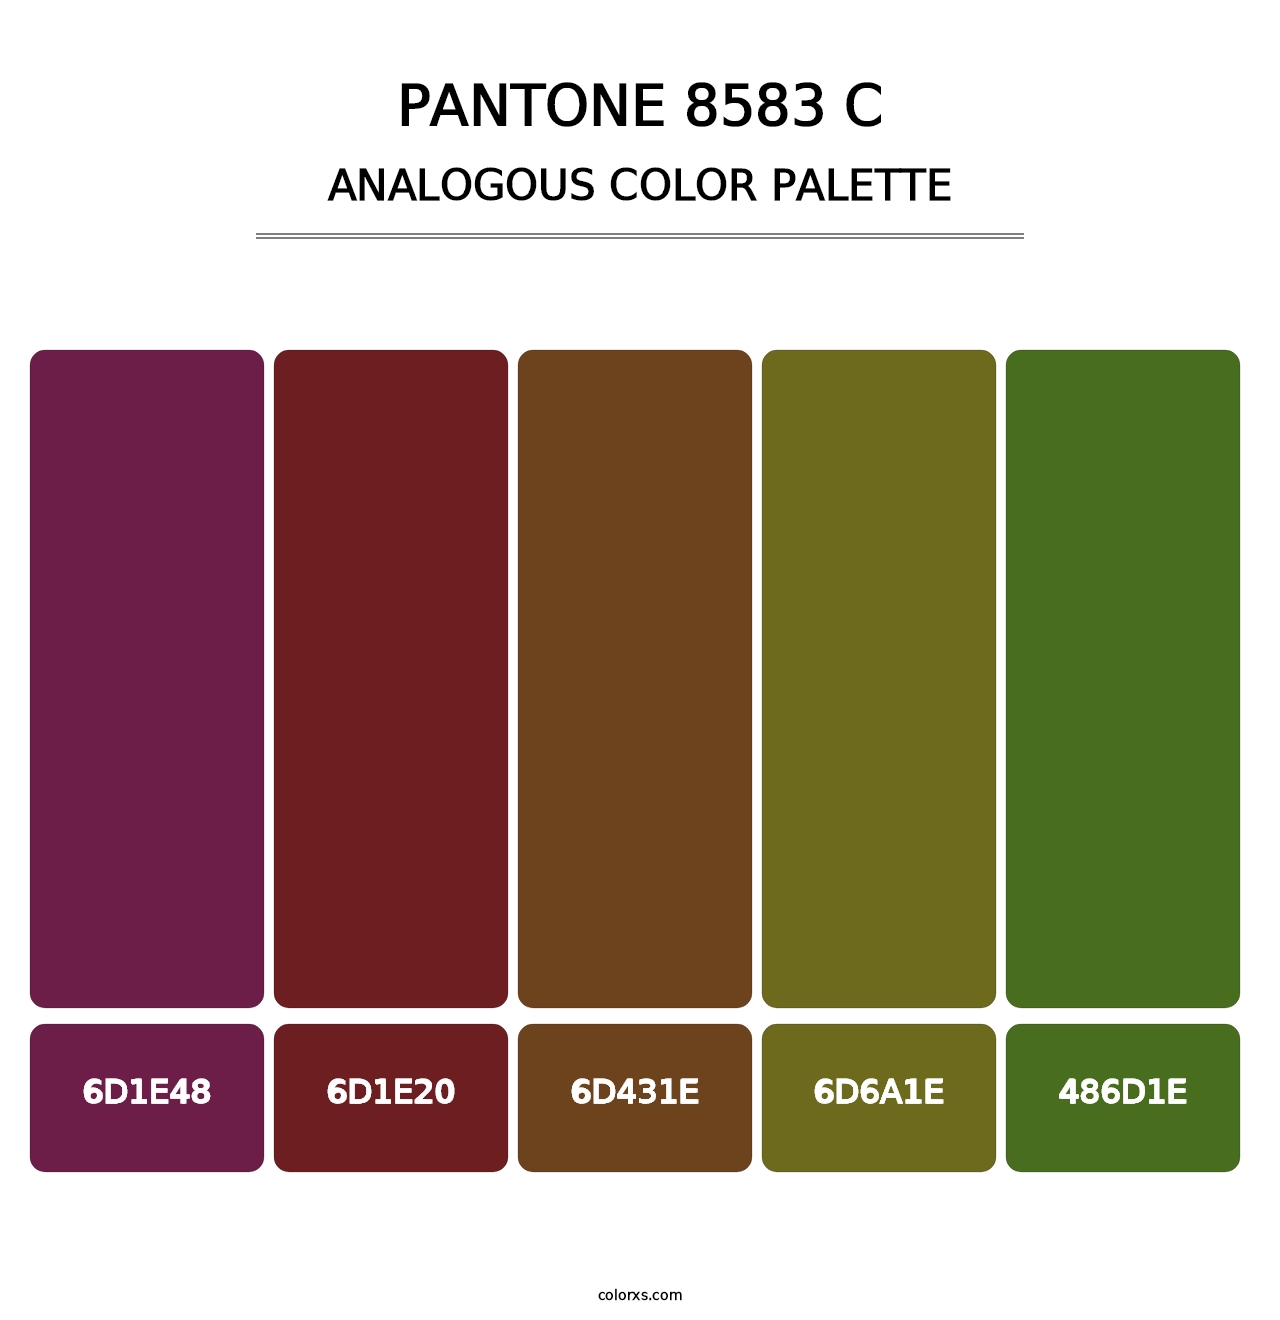 PANTONE 8583 C - Analogous Color Palette